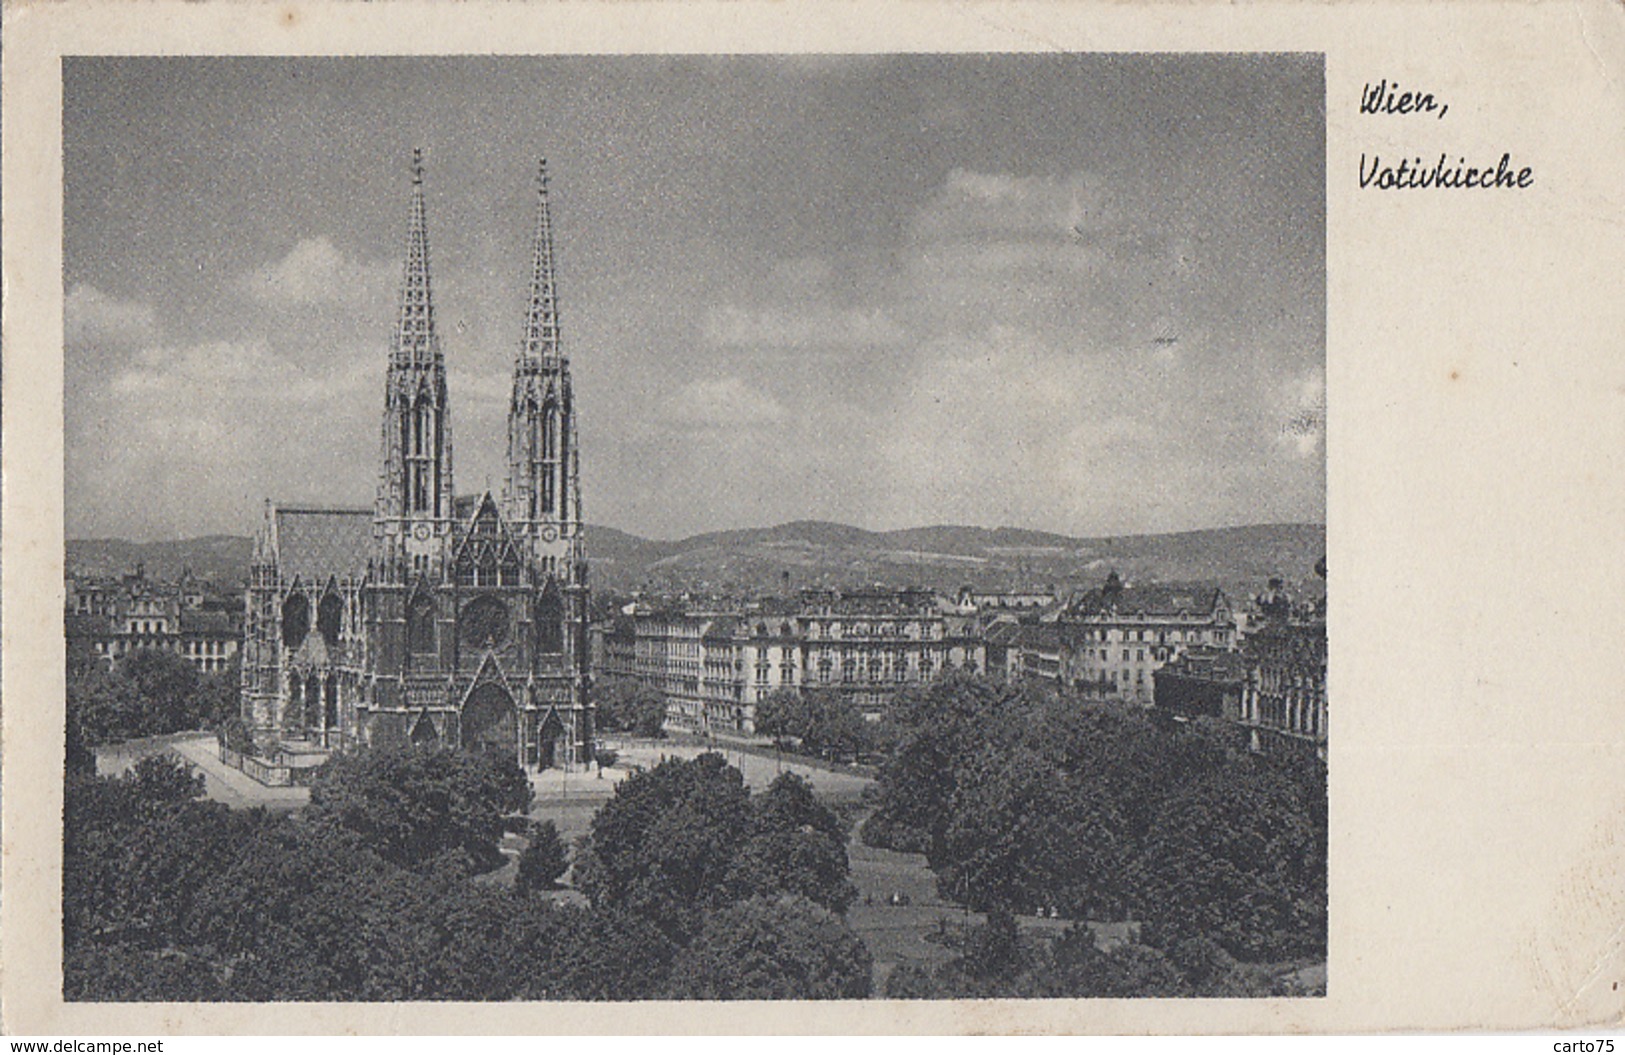 Autriche - Wien - Votivkirche - Postmarked Poste Aux Armées 1949 - Au Château Du Pré D'Auge La Boissière 14 - Kirchen